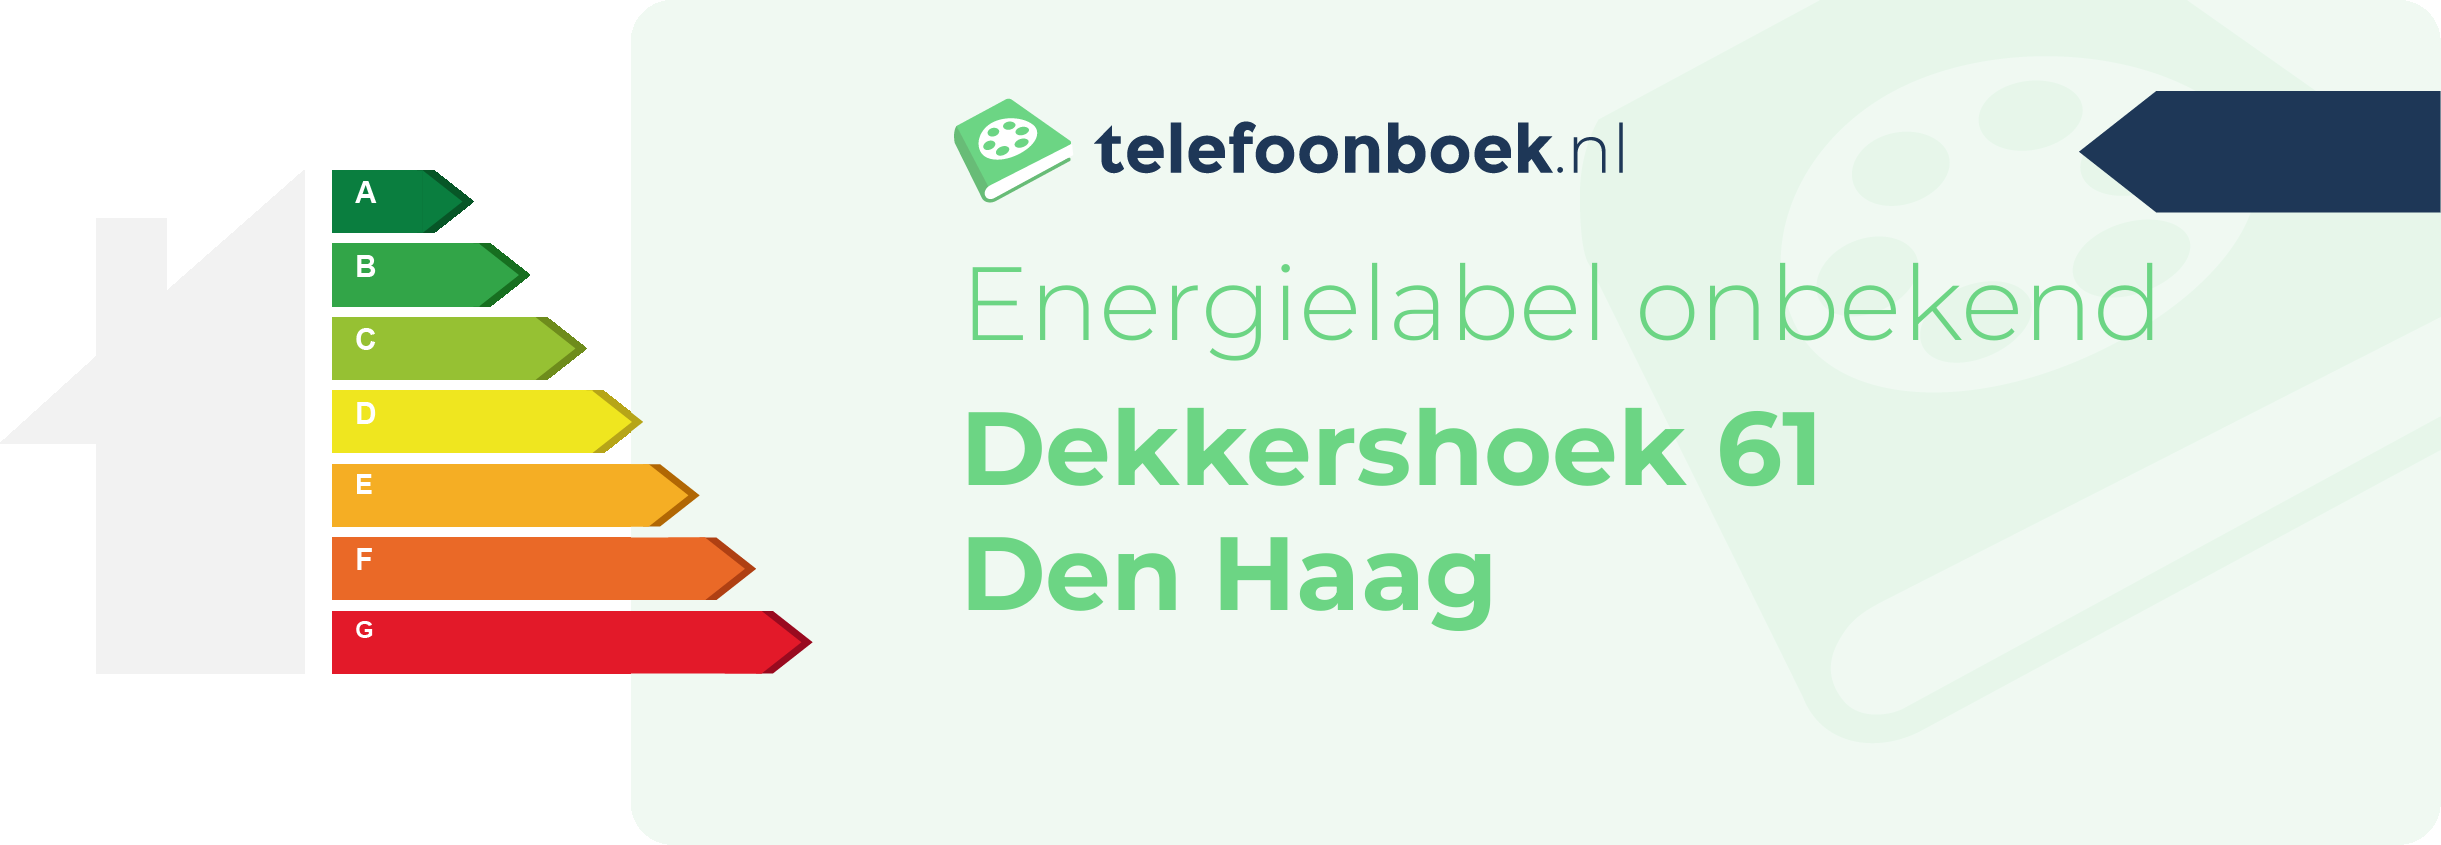 Energielabel Dekkershoek 61 Den Haag